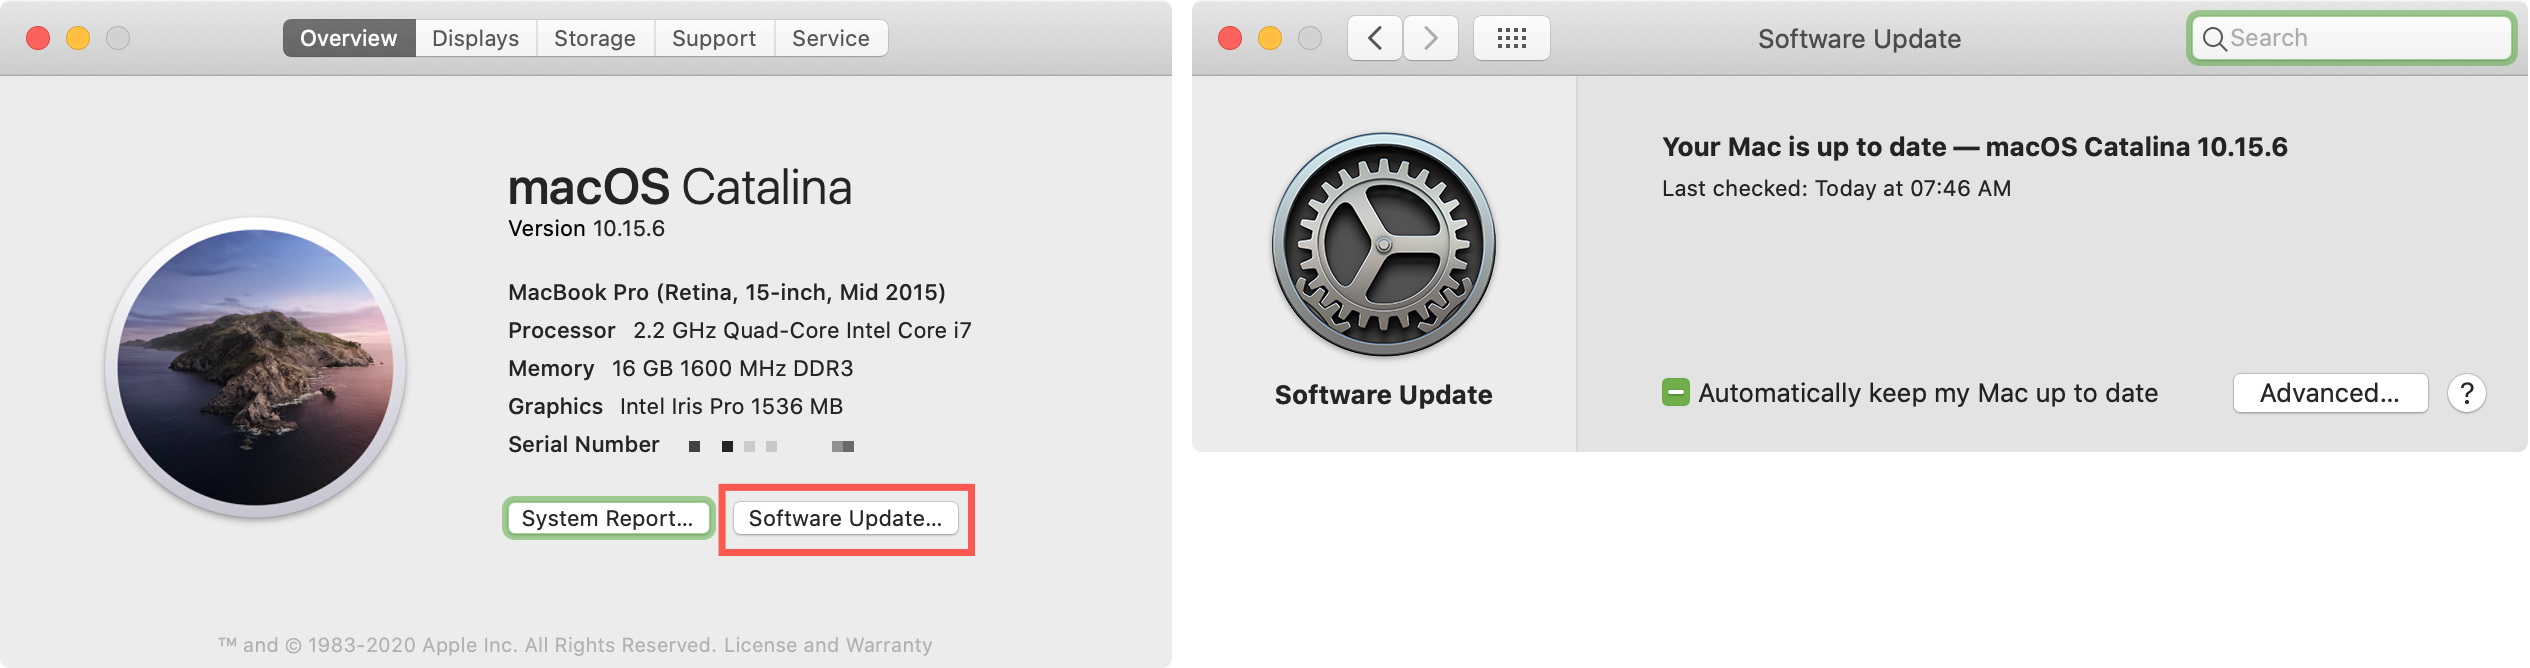 Informazioni su questo aggiornamento software per Mac